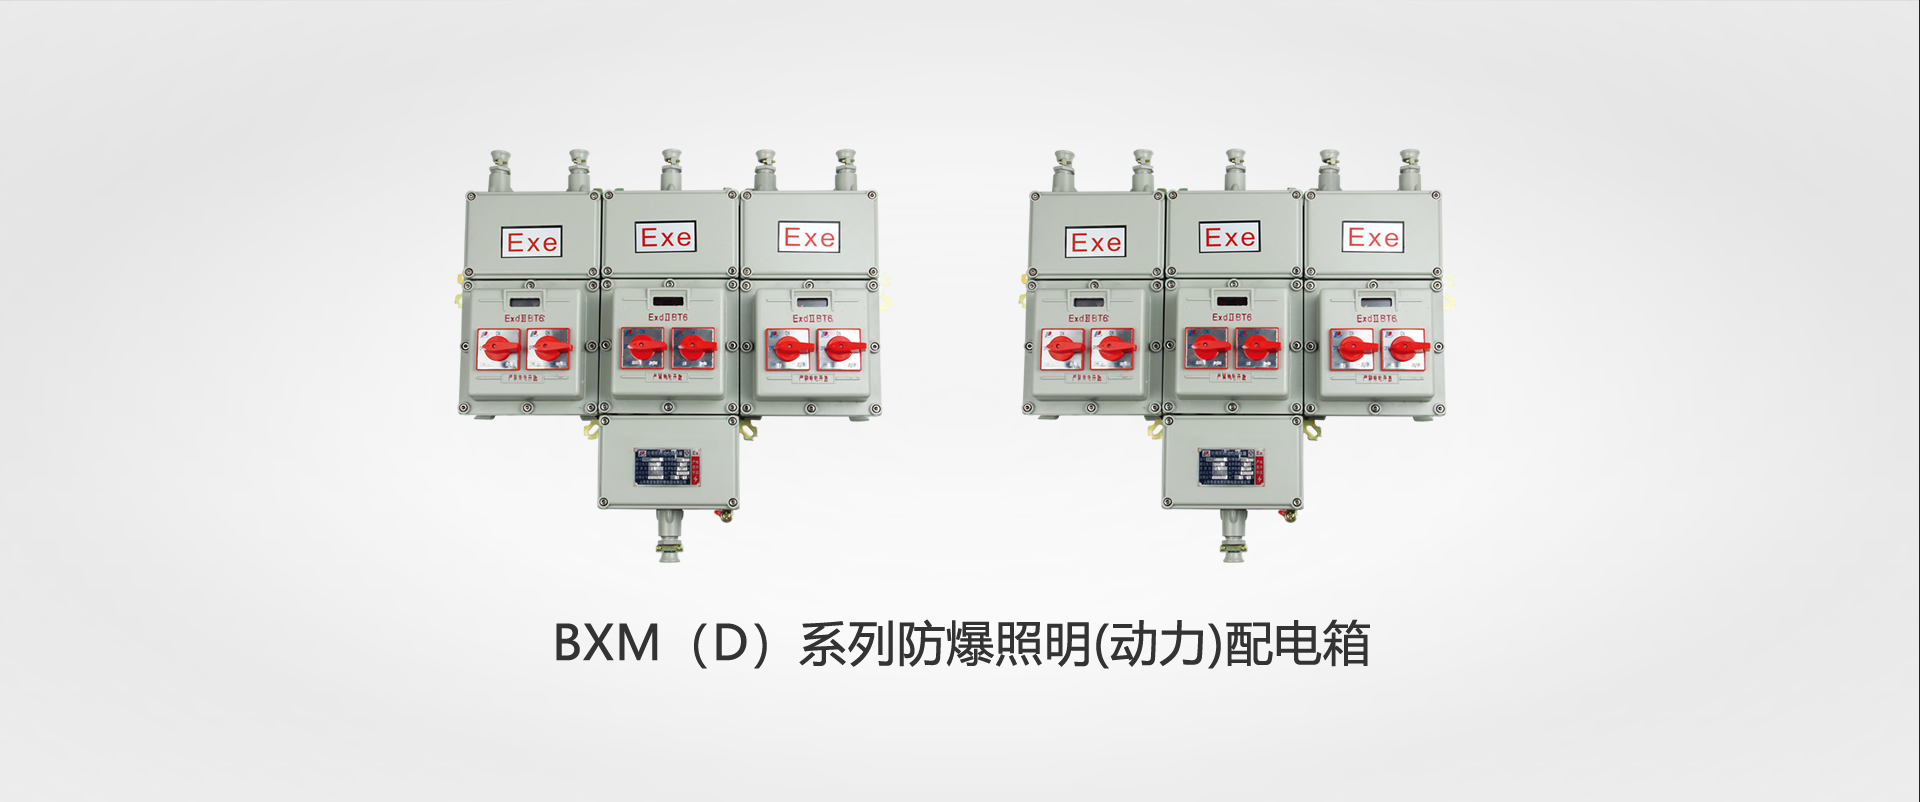 BXM（D）系列千亿体育球友会照明(动力)配电箱